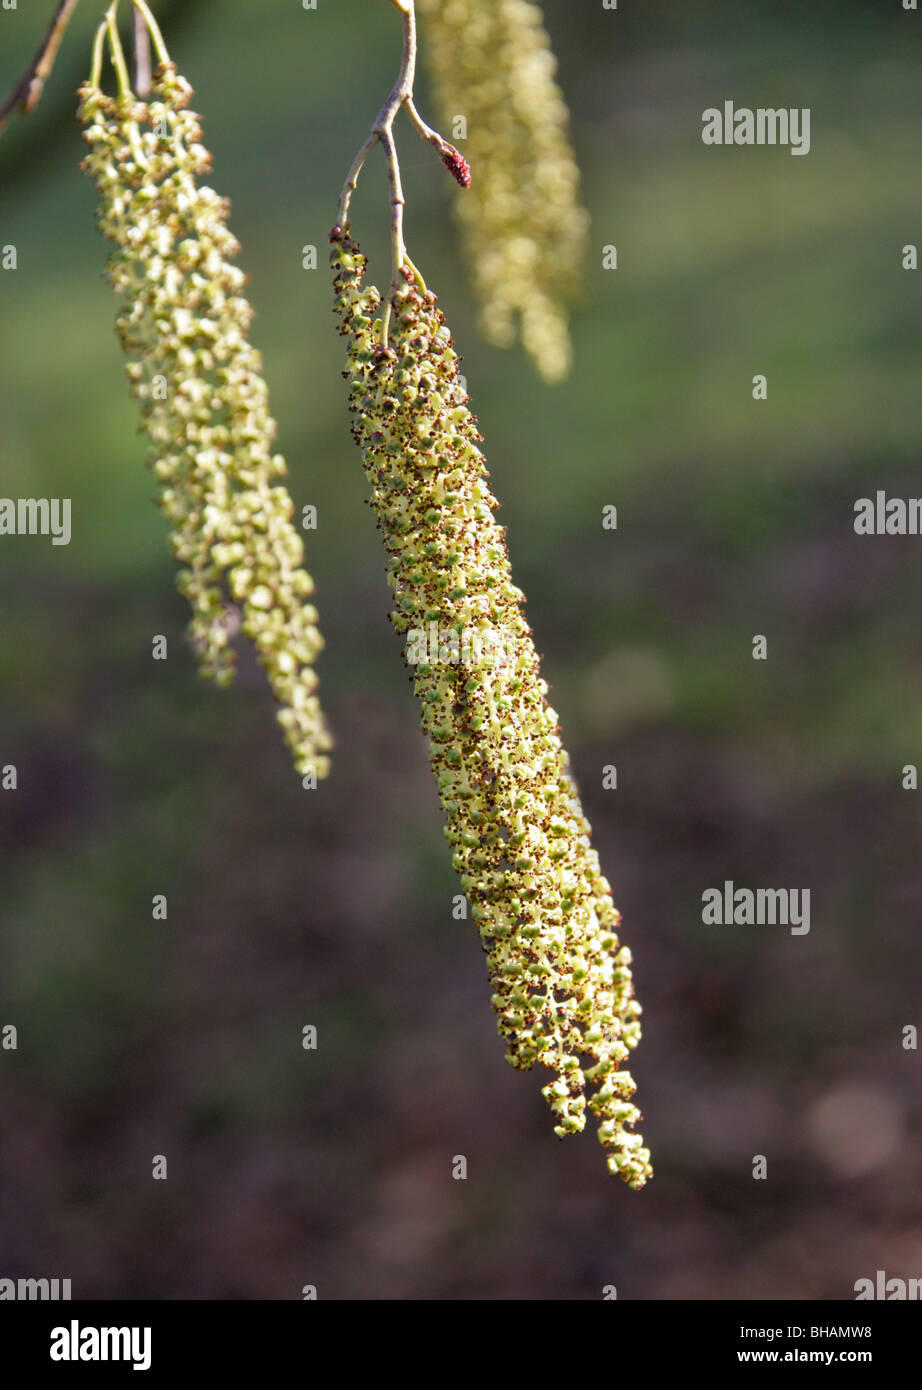 Alder Catkins, Alnus x spaethii (Alnus japonica × Alnus subcordata), Betulaceae Stock Photo